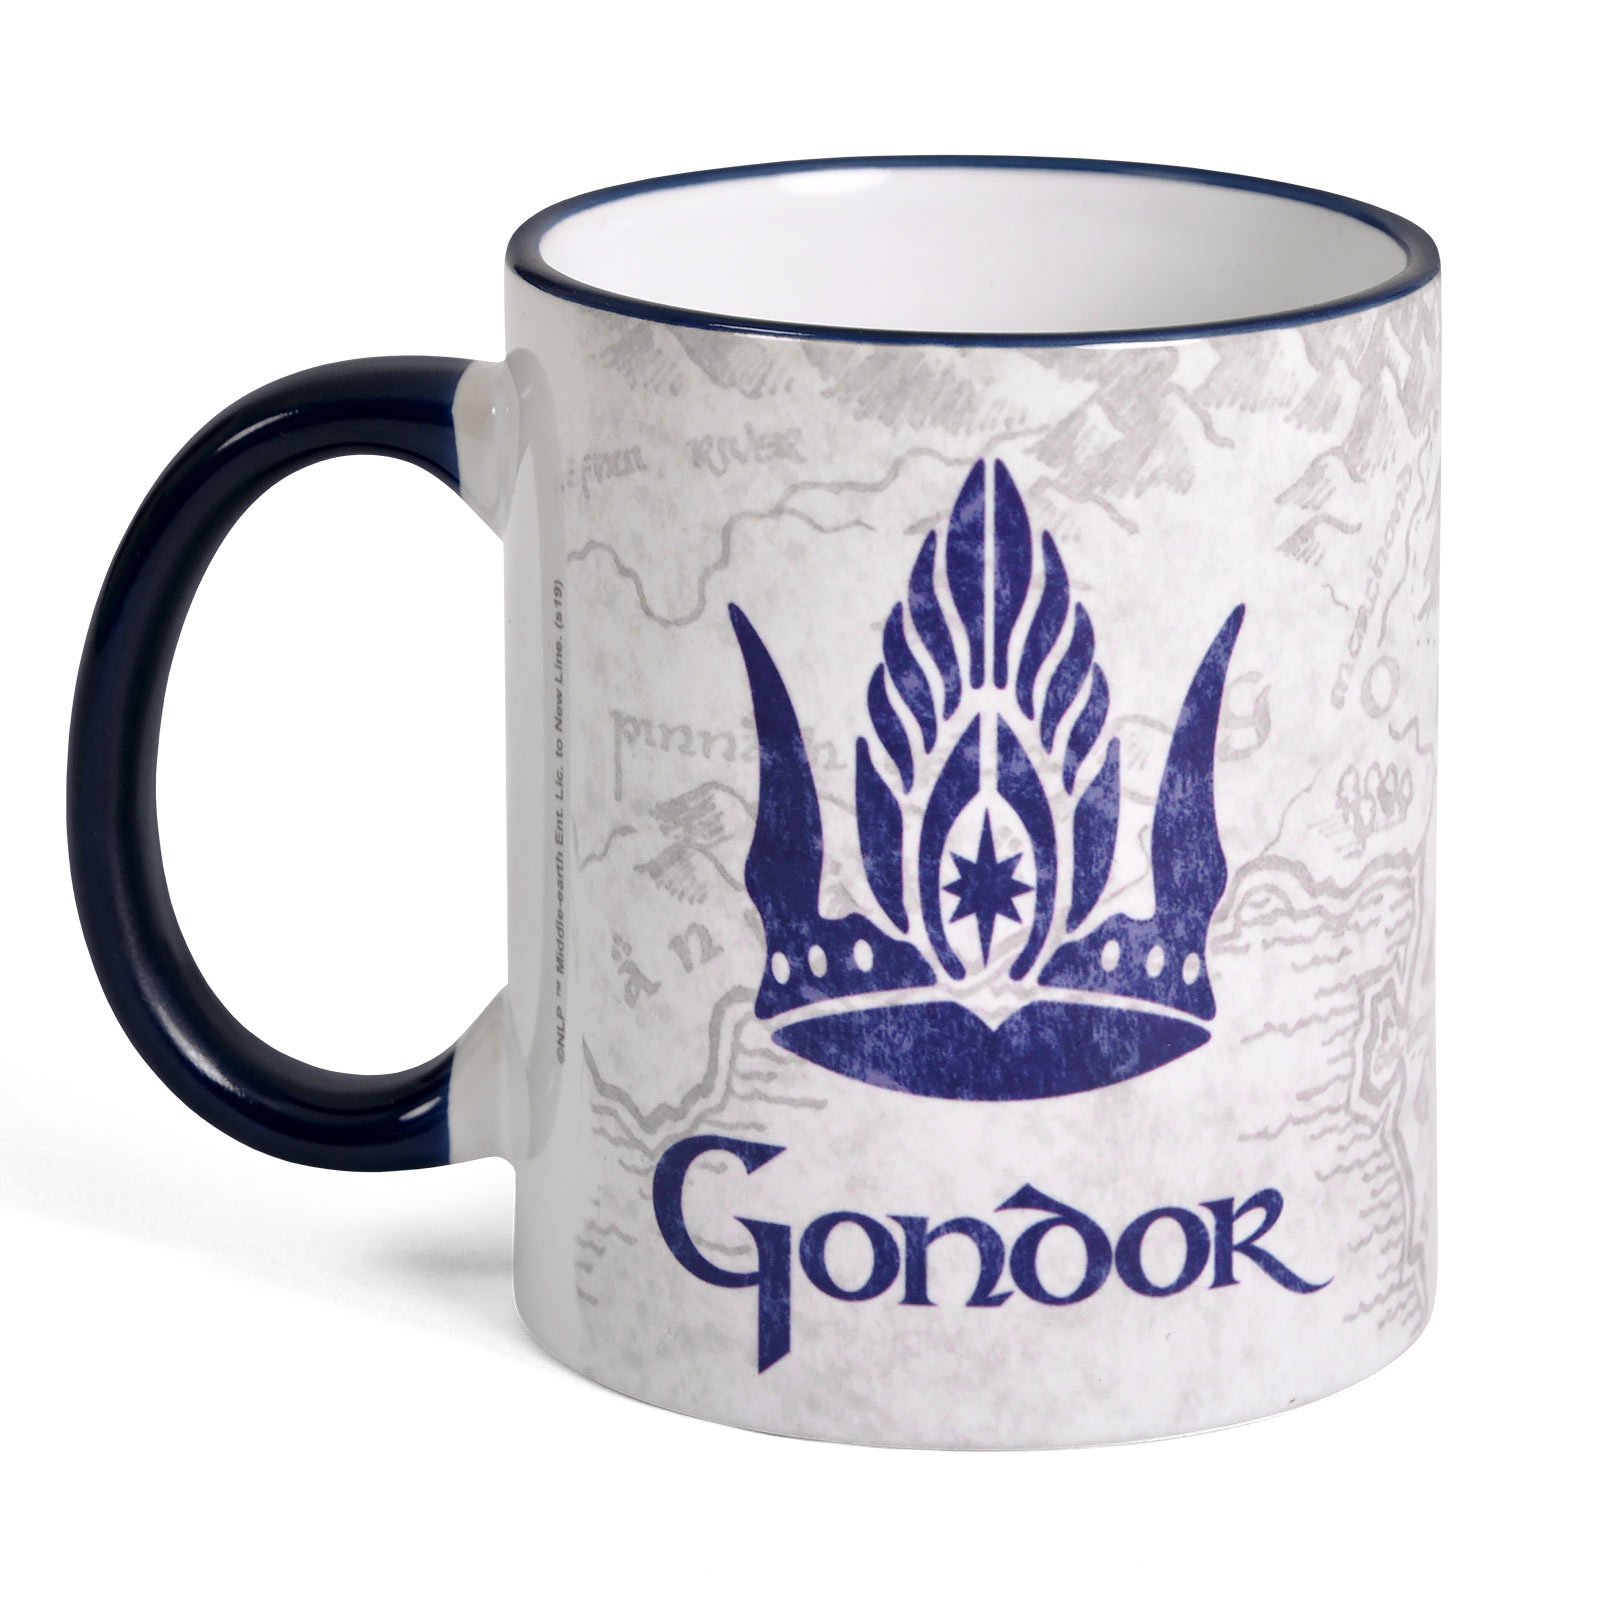 Herr der Ringe - Gondor Tasse